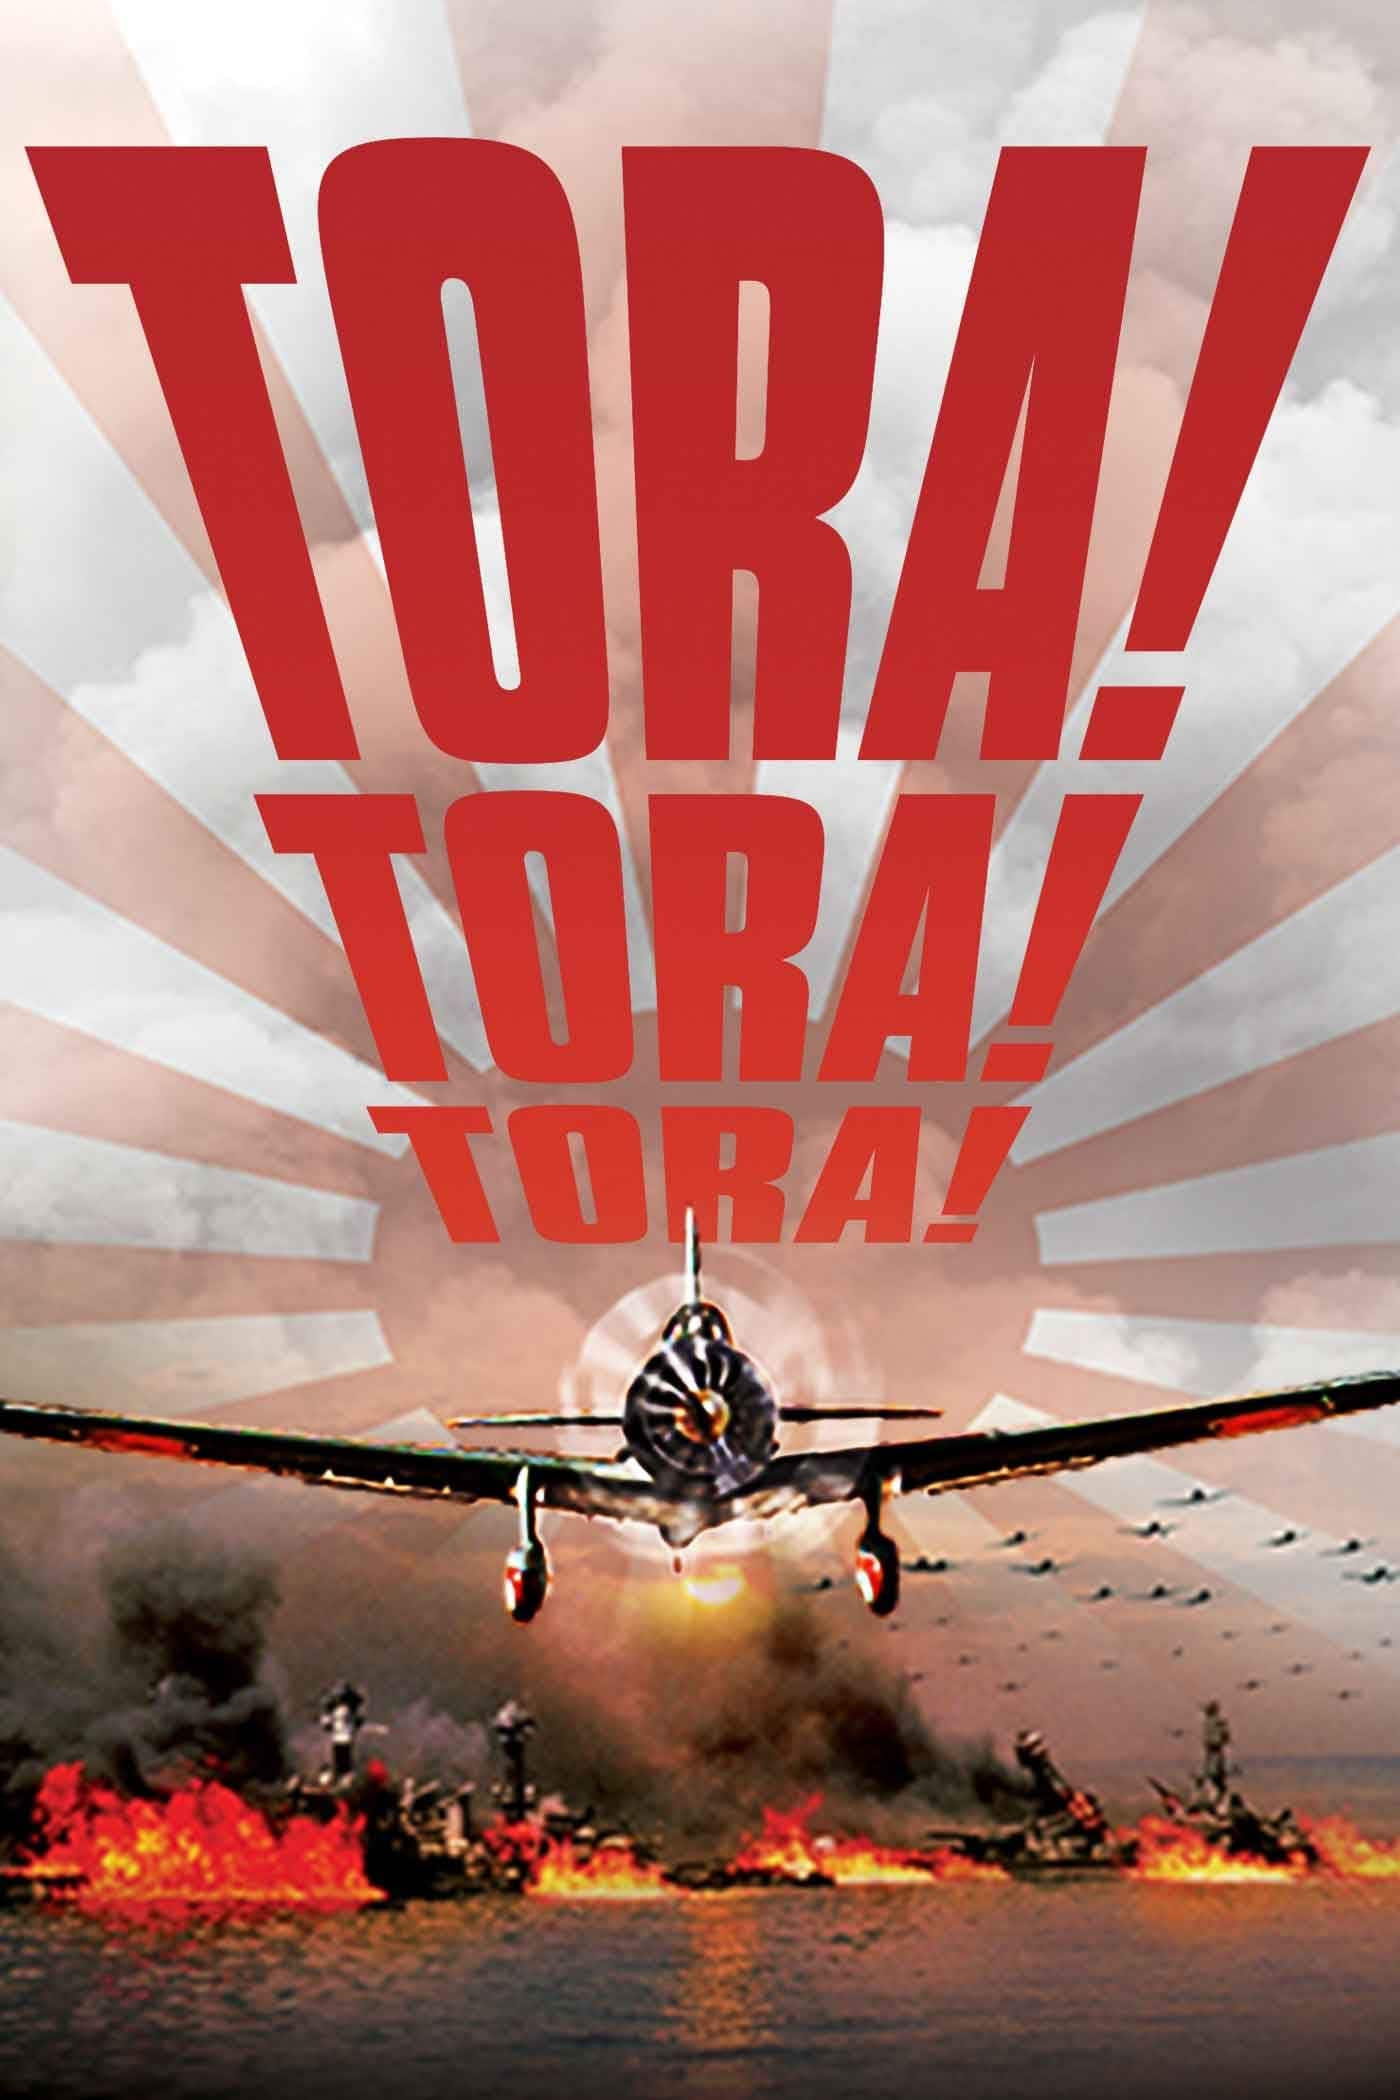 Tora! Tora! Tora! 